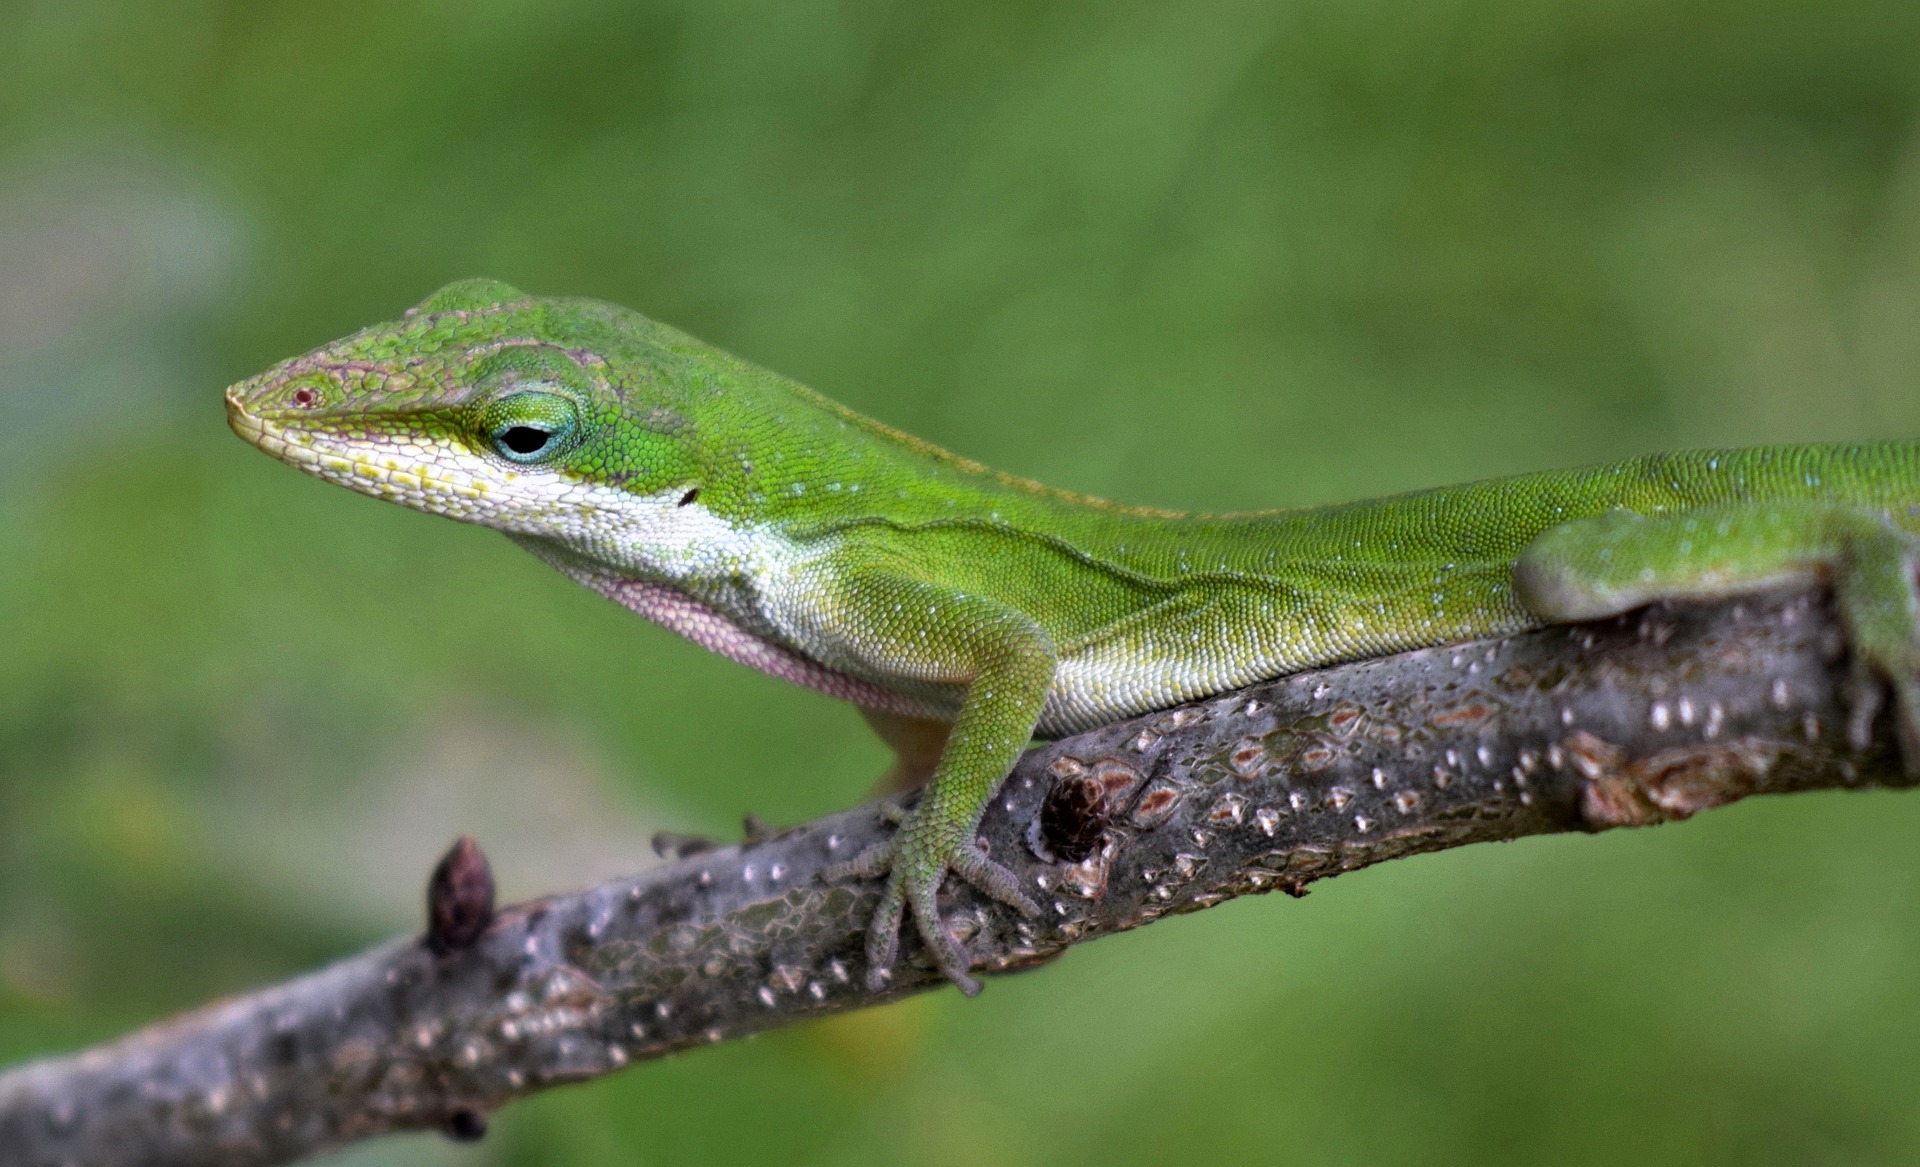 Green anole lizard on branch.